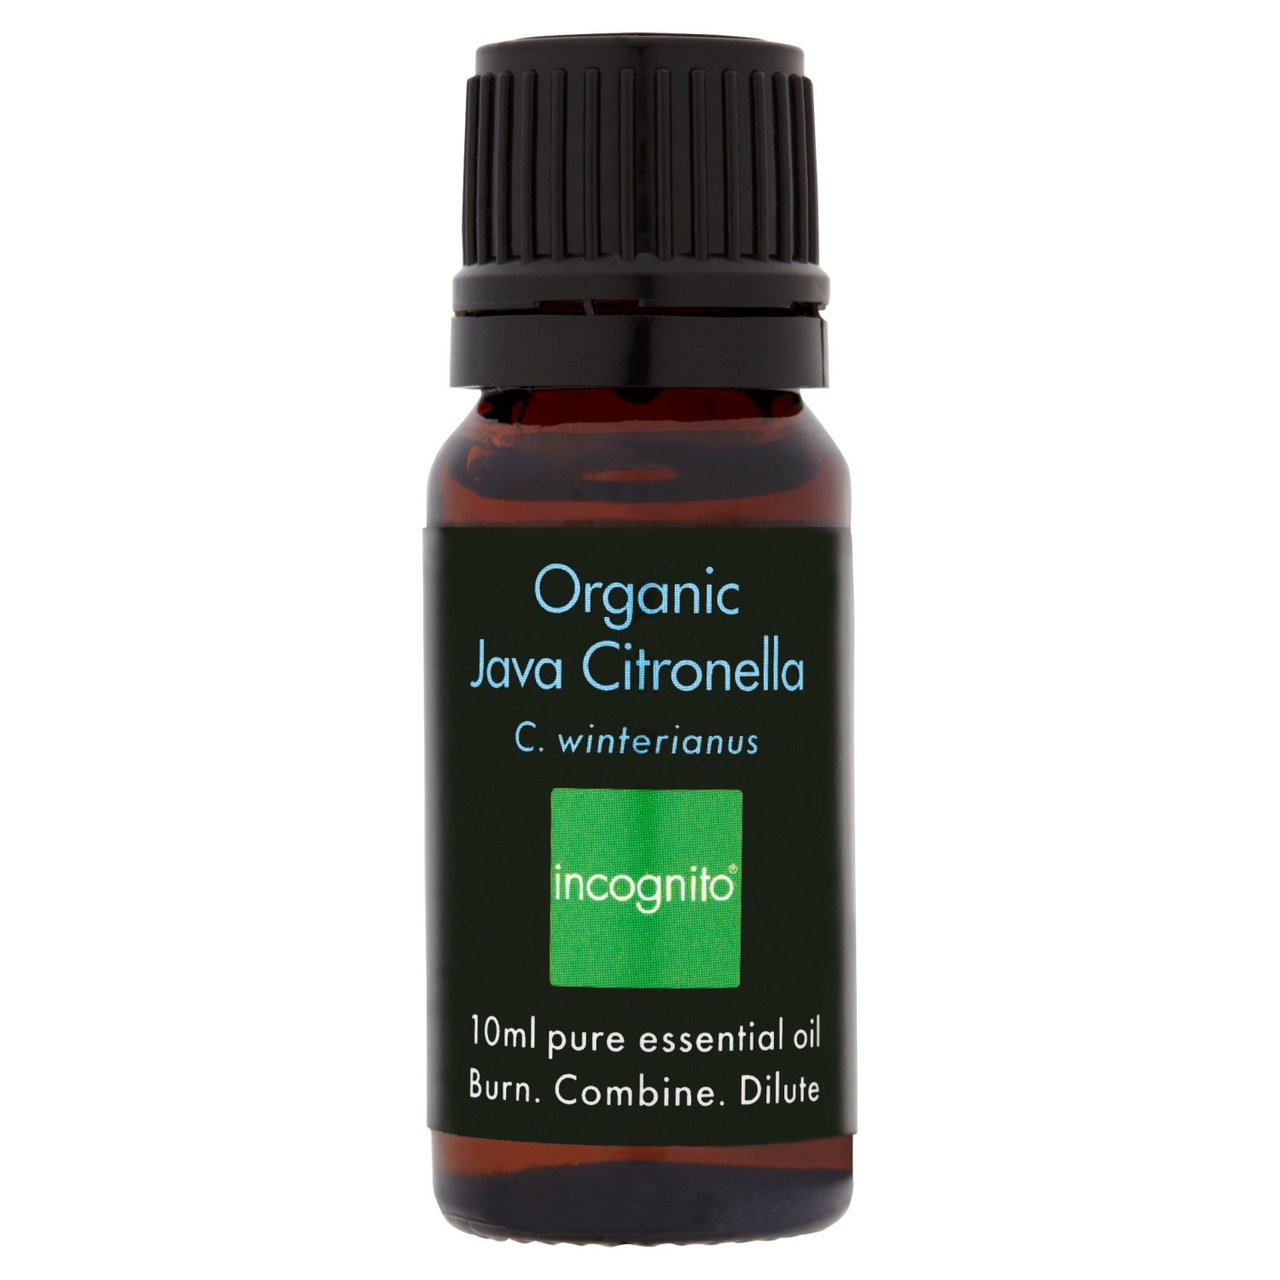 Incognito Organic Citronella Oil Insect Repellent 10ml